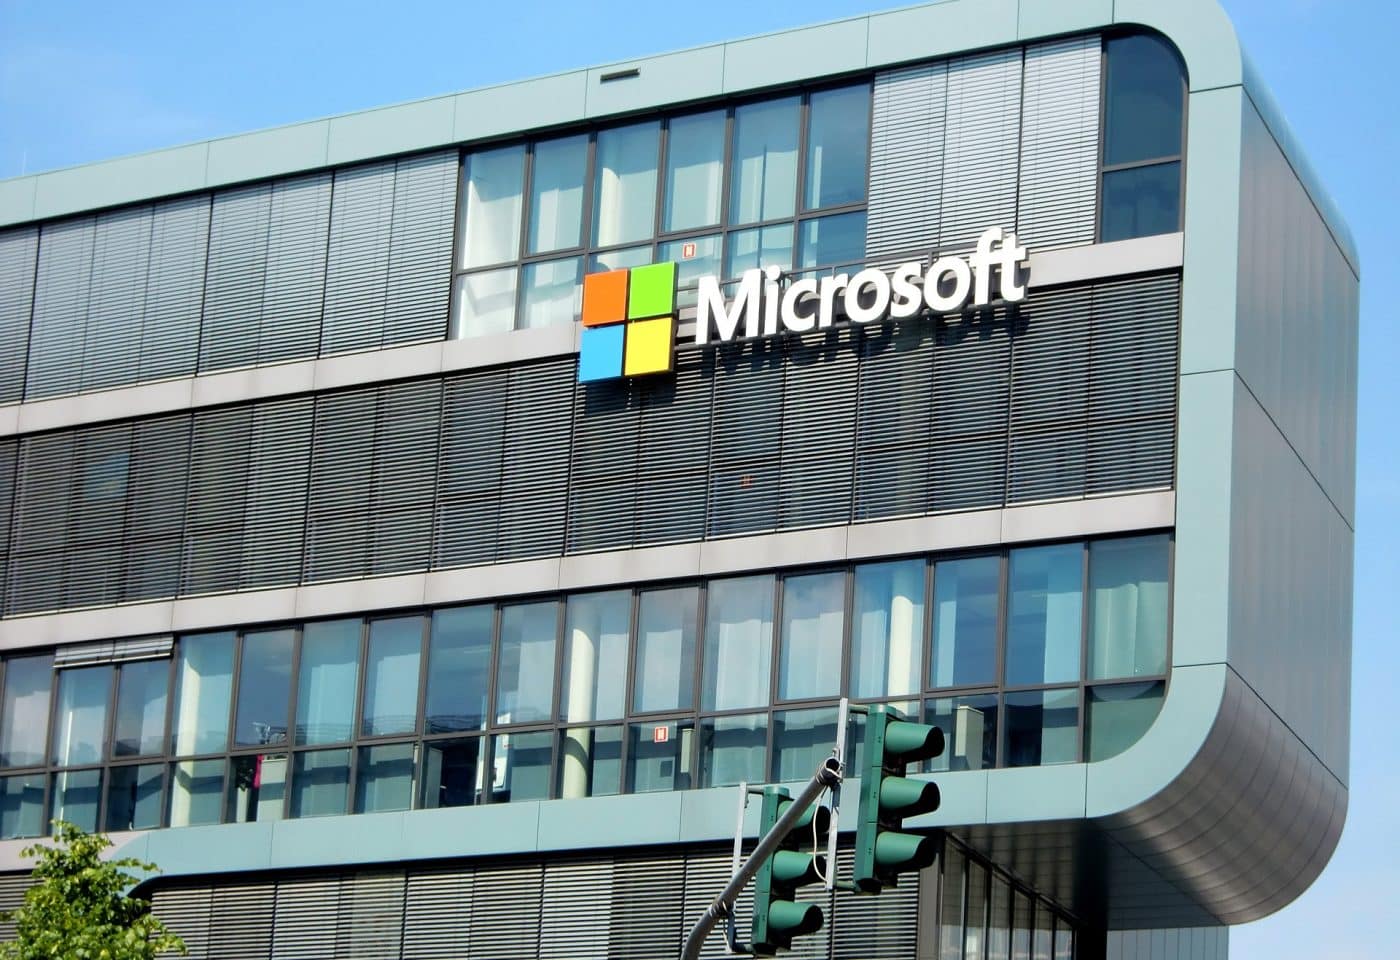 Un immeuble de forme rectangulaire avec une devanture Microsoft.